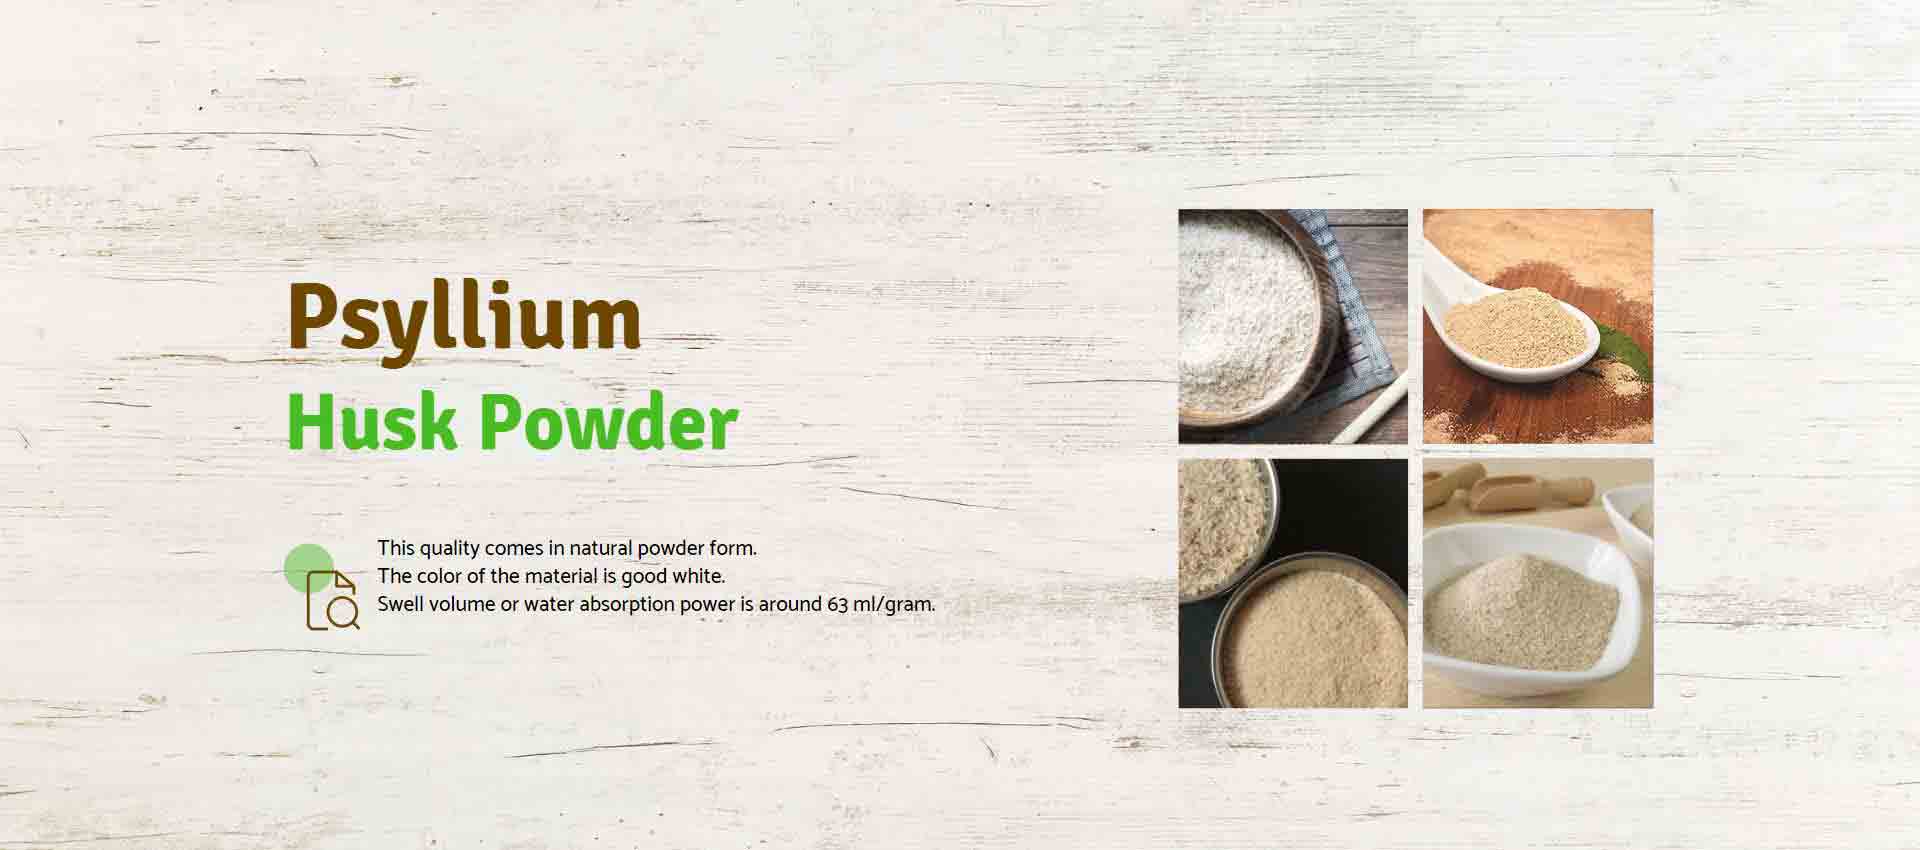 Psyllium Husk Powder Manufacturers in Texas